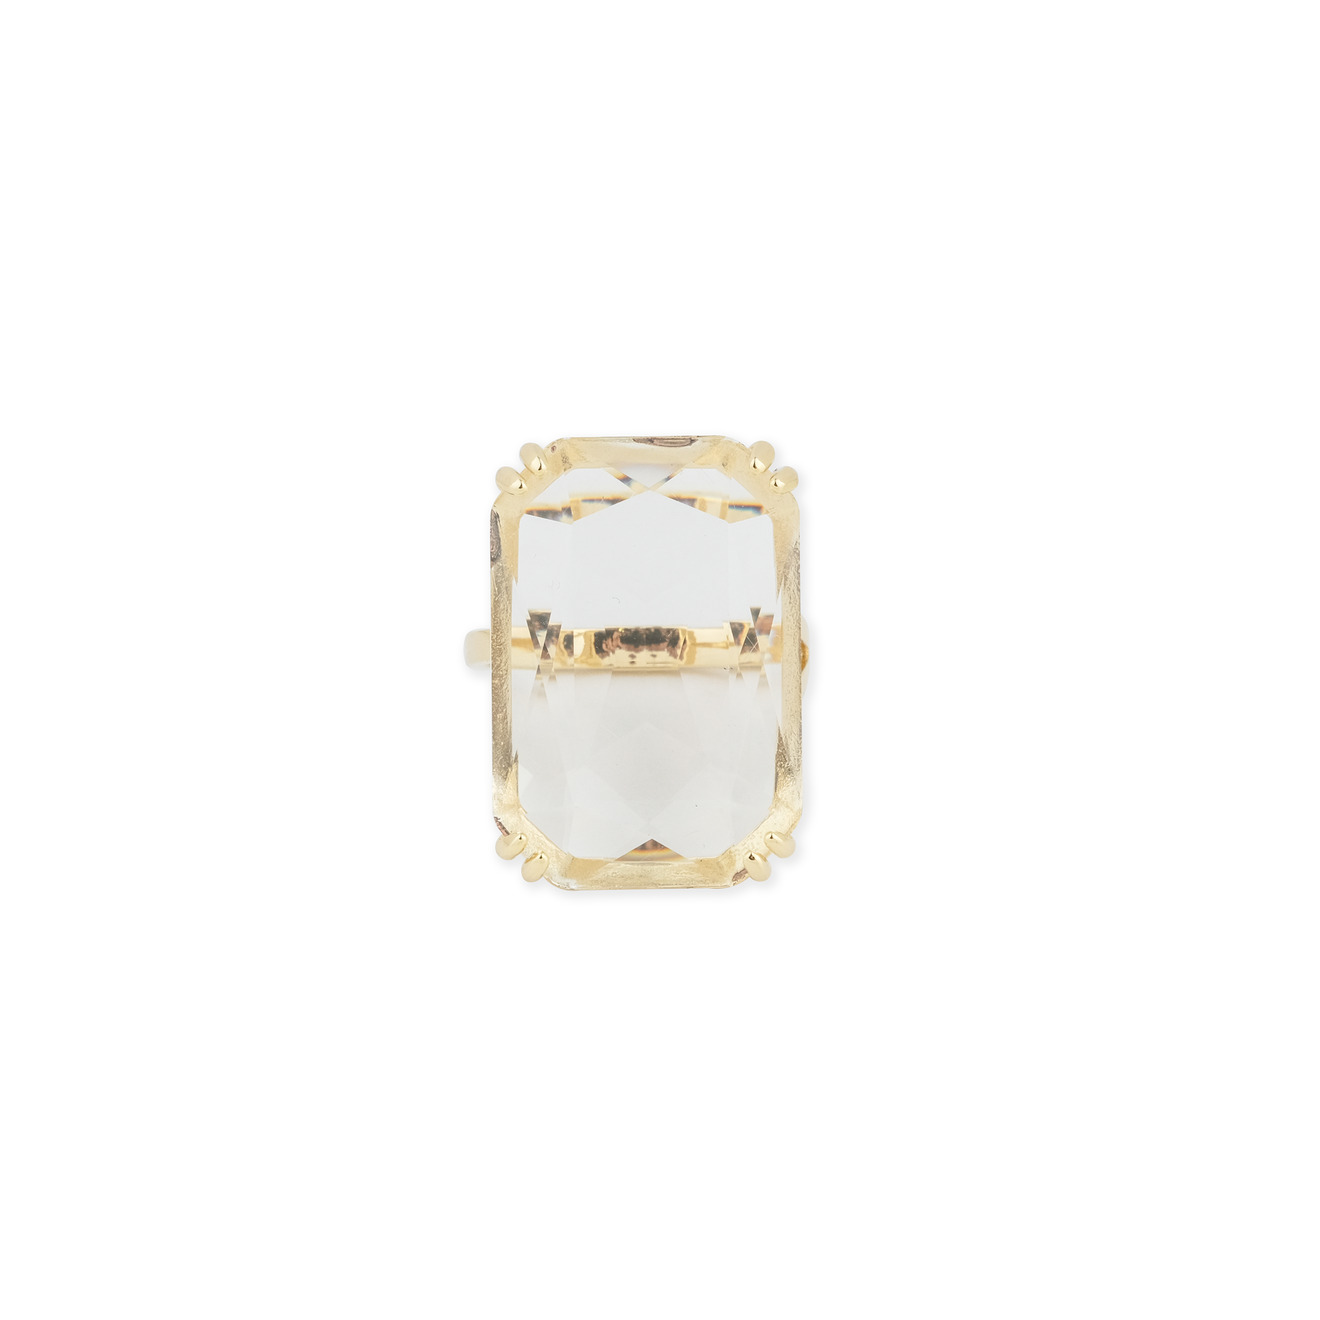 Herald Percy Золотистое кольцо с прямоугольным кристаллом